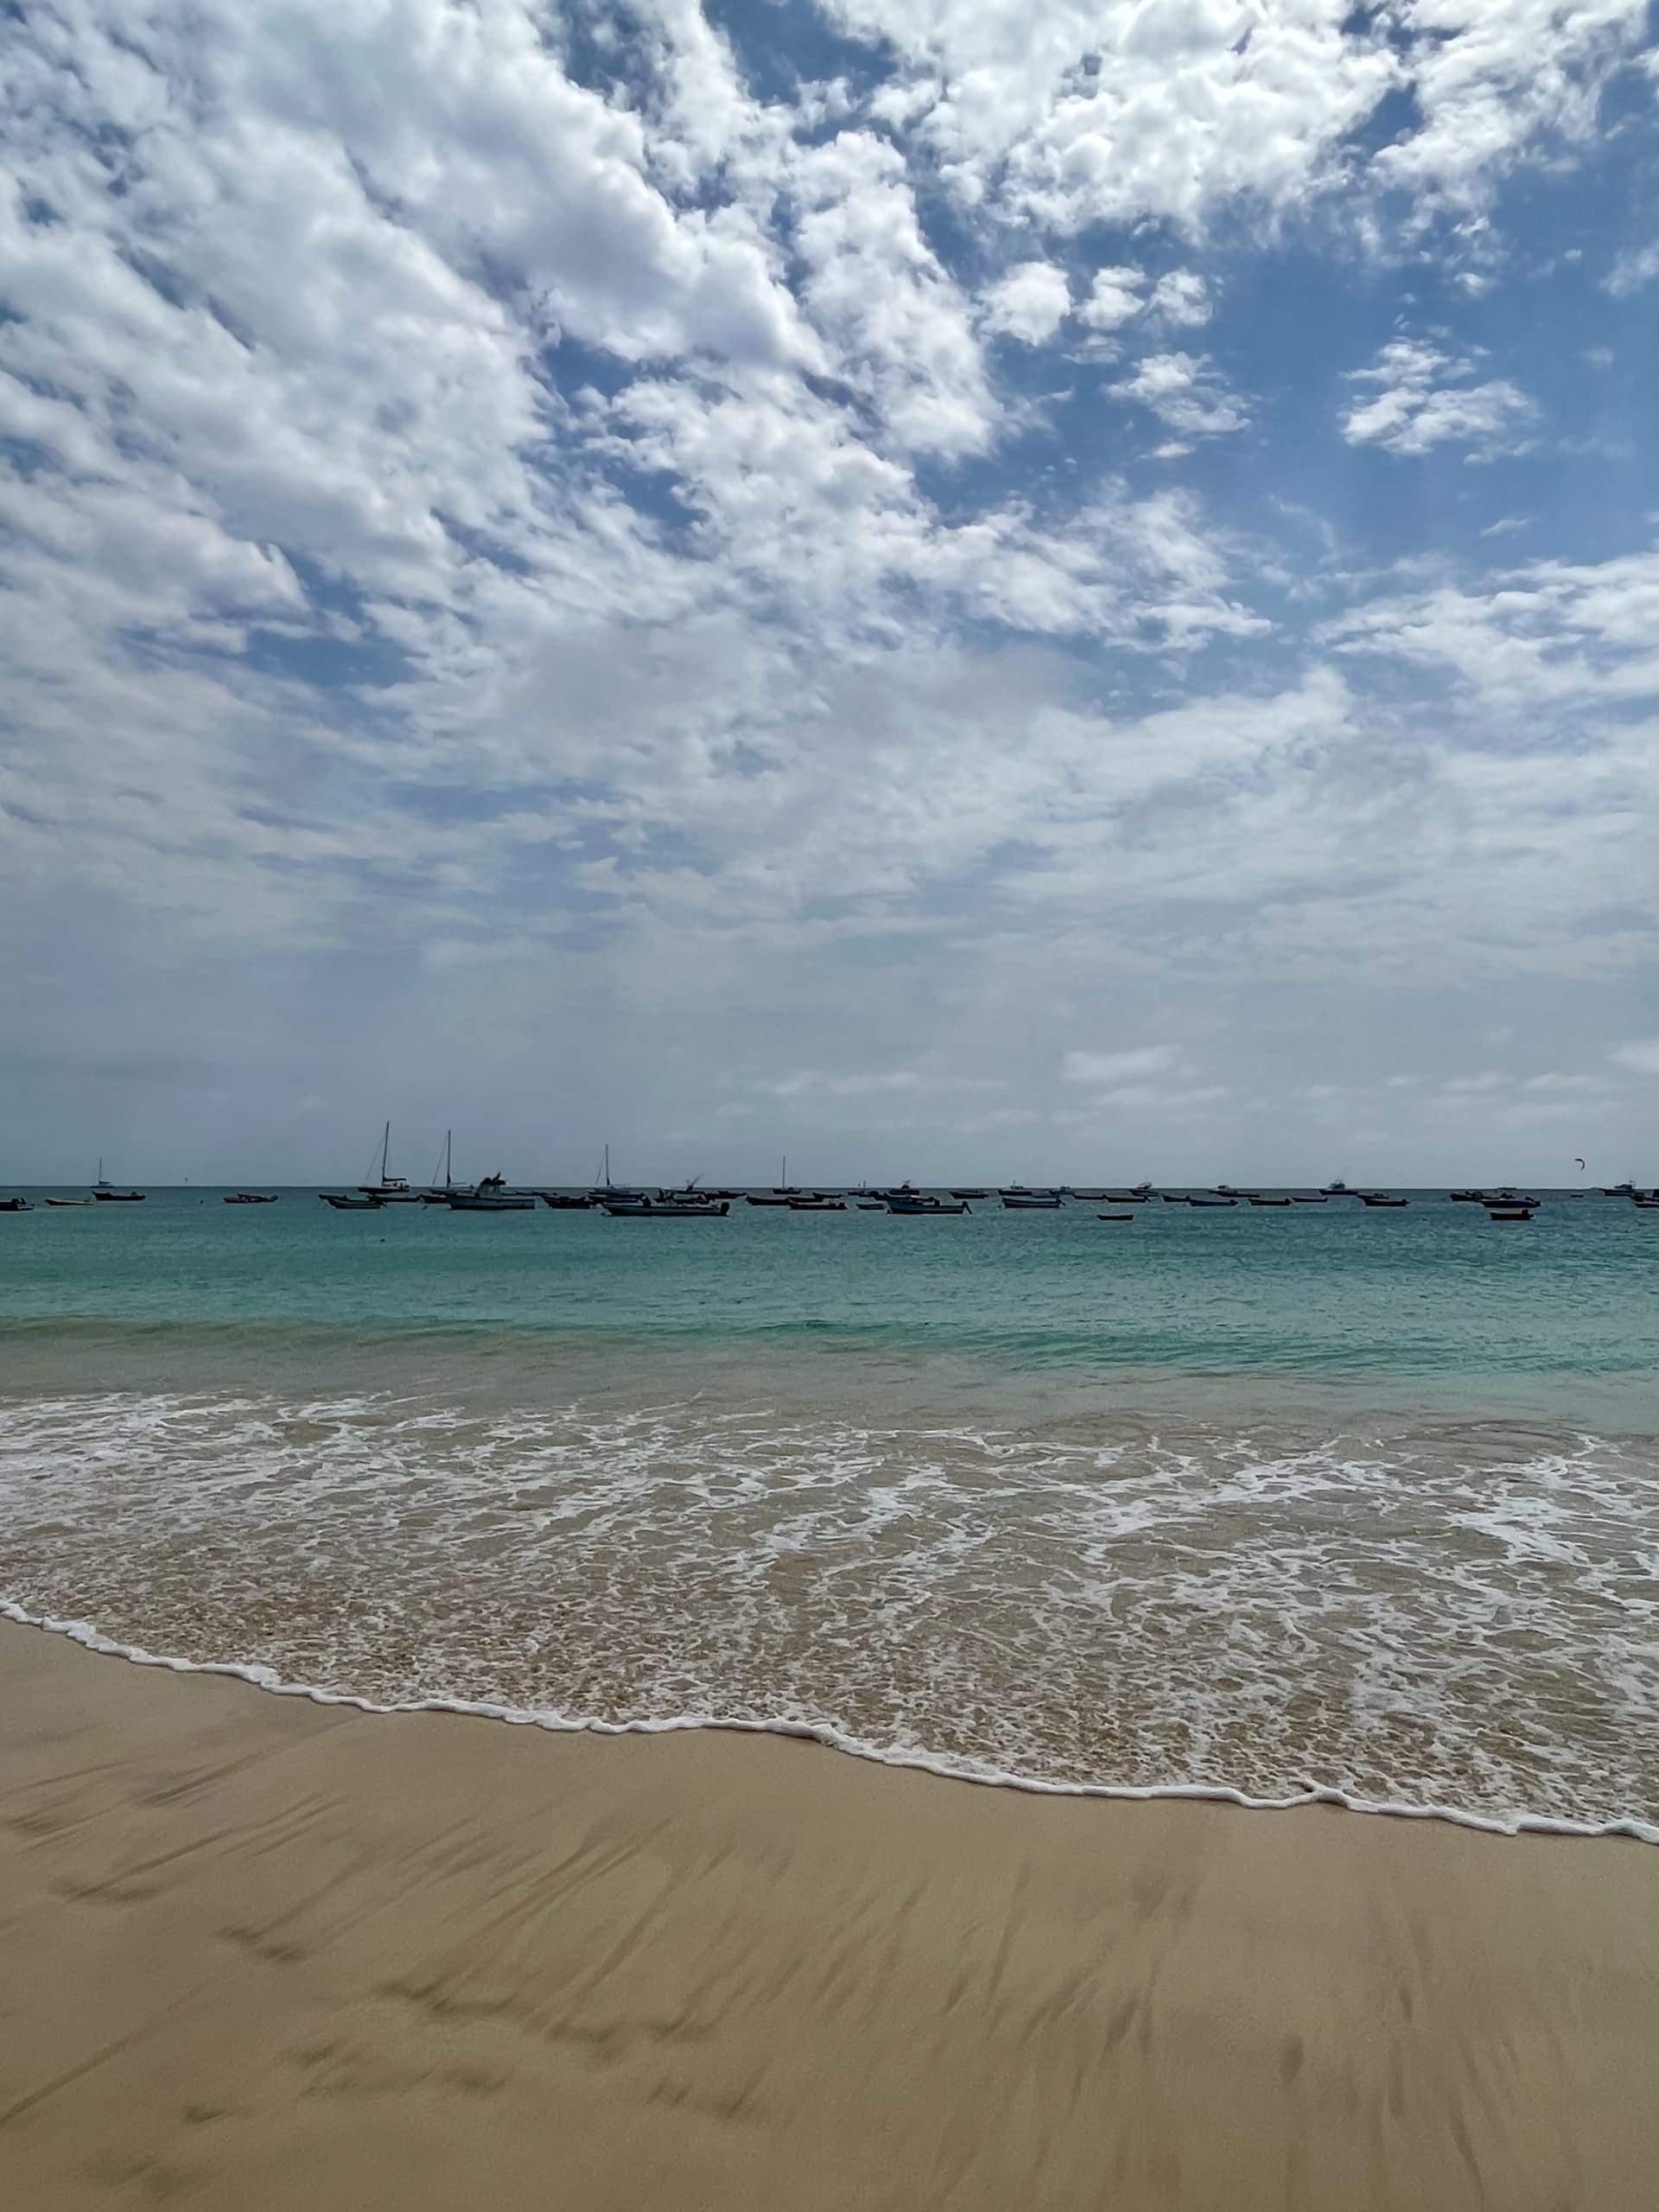 Moře je na ostrovu Sal díky písku a obloze průzračně modré.